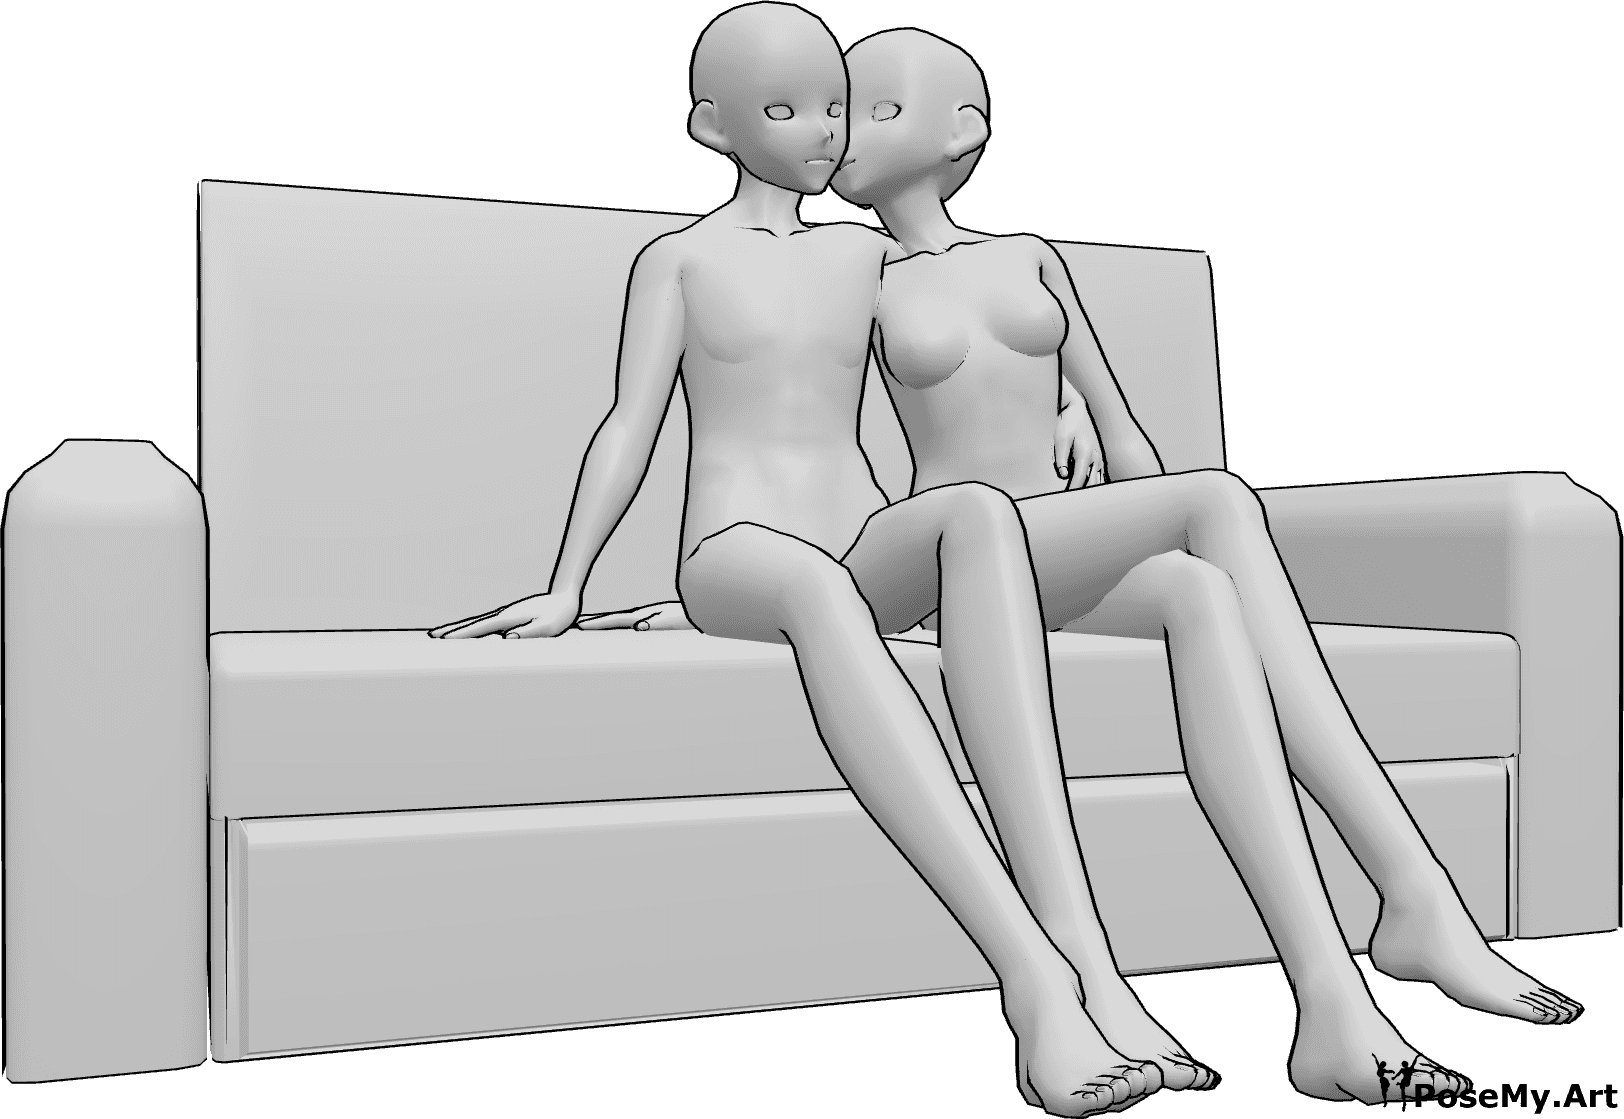 Référence des poses- Pose assise pour embrasser les joues - Une femme et un homme sont assis sur le canapé, la femme donne un baiser sur la joue.